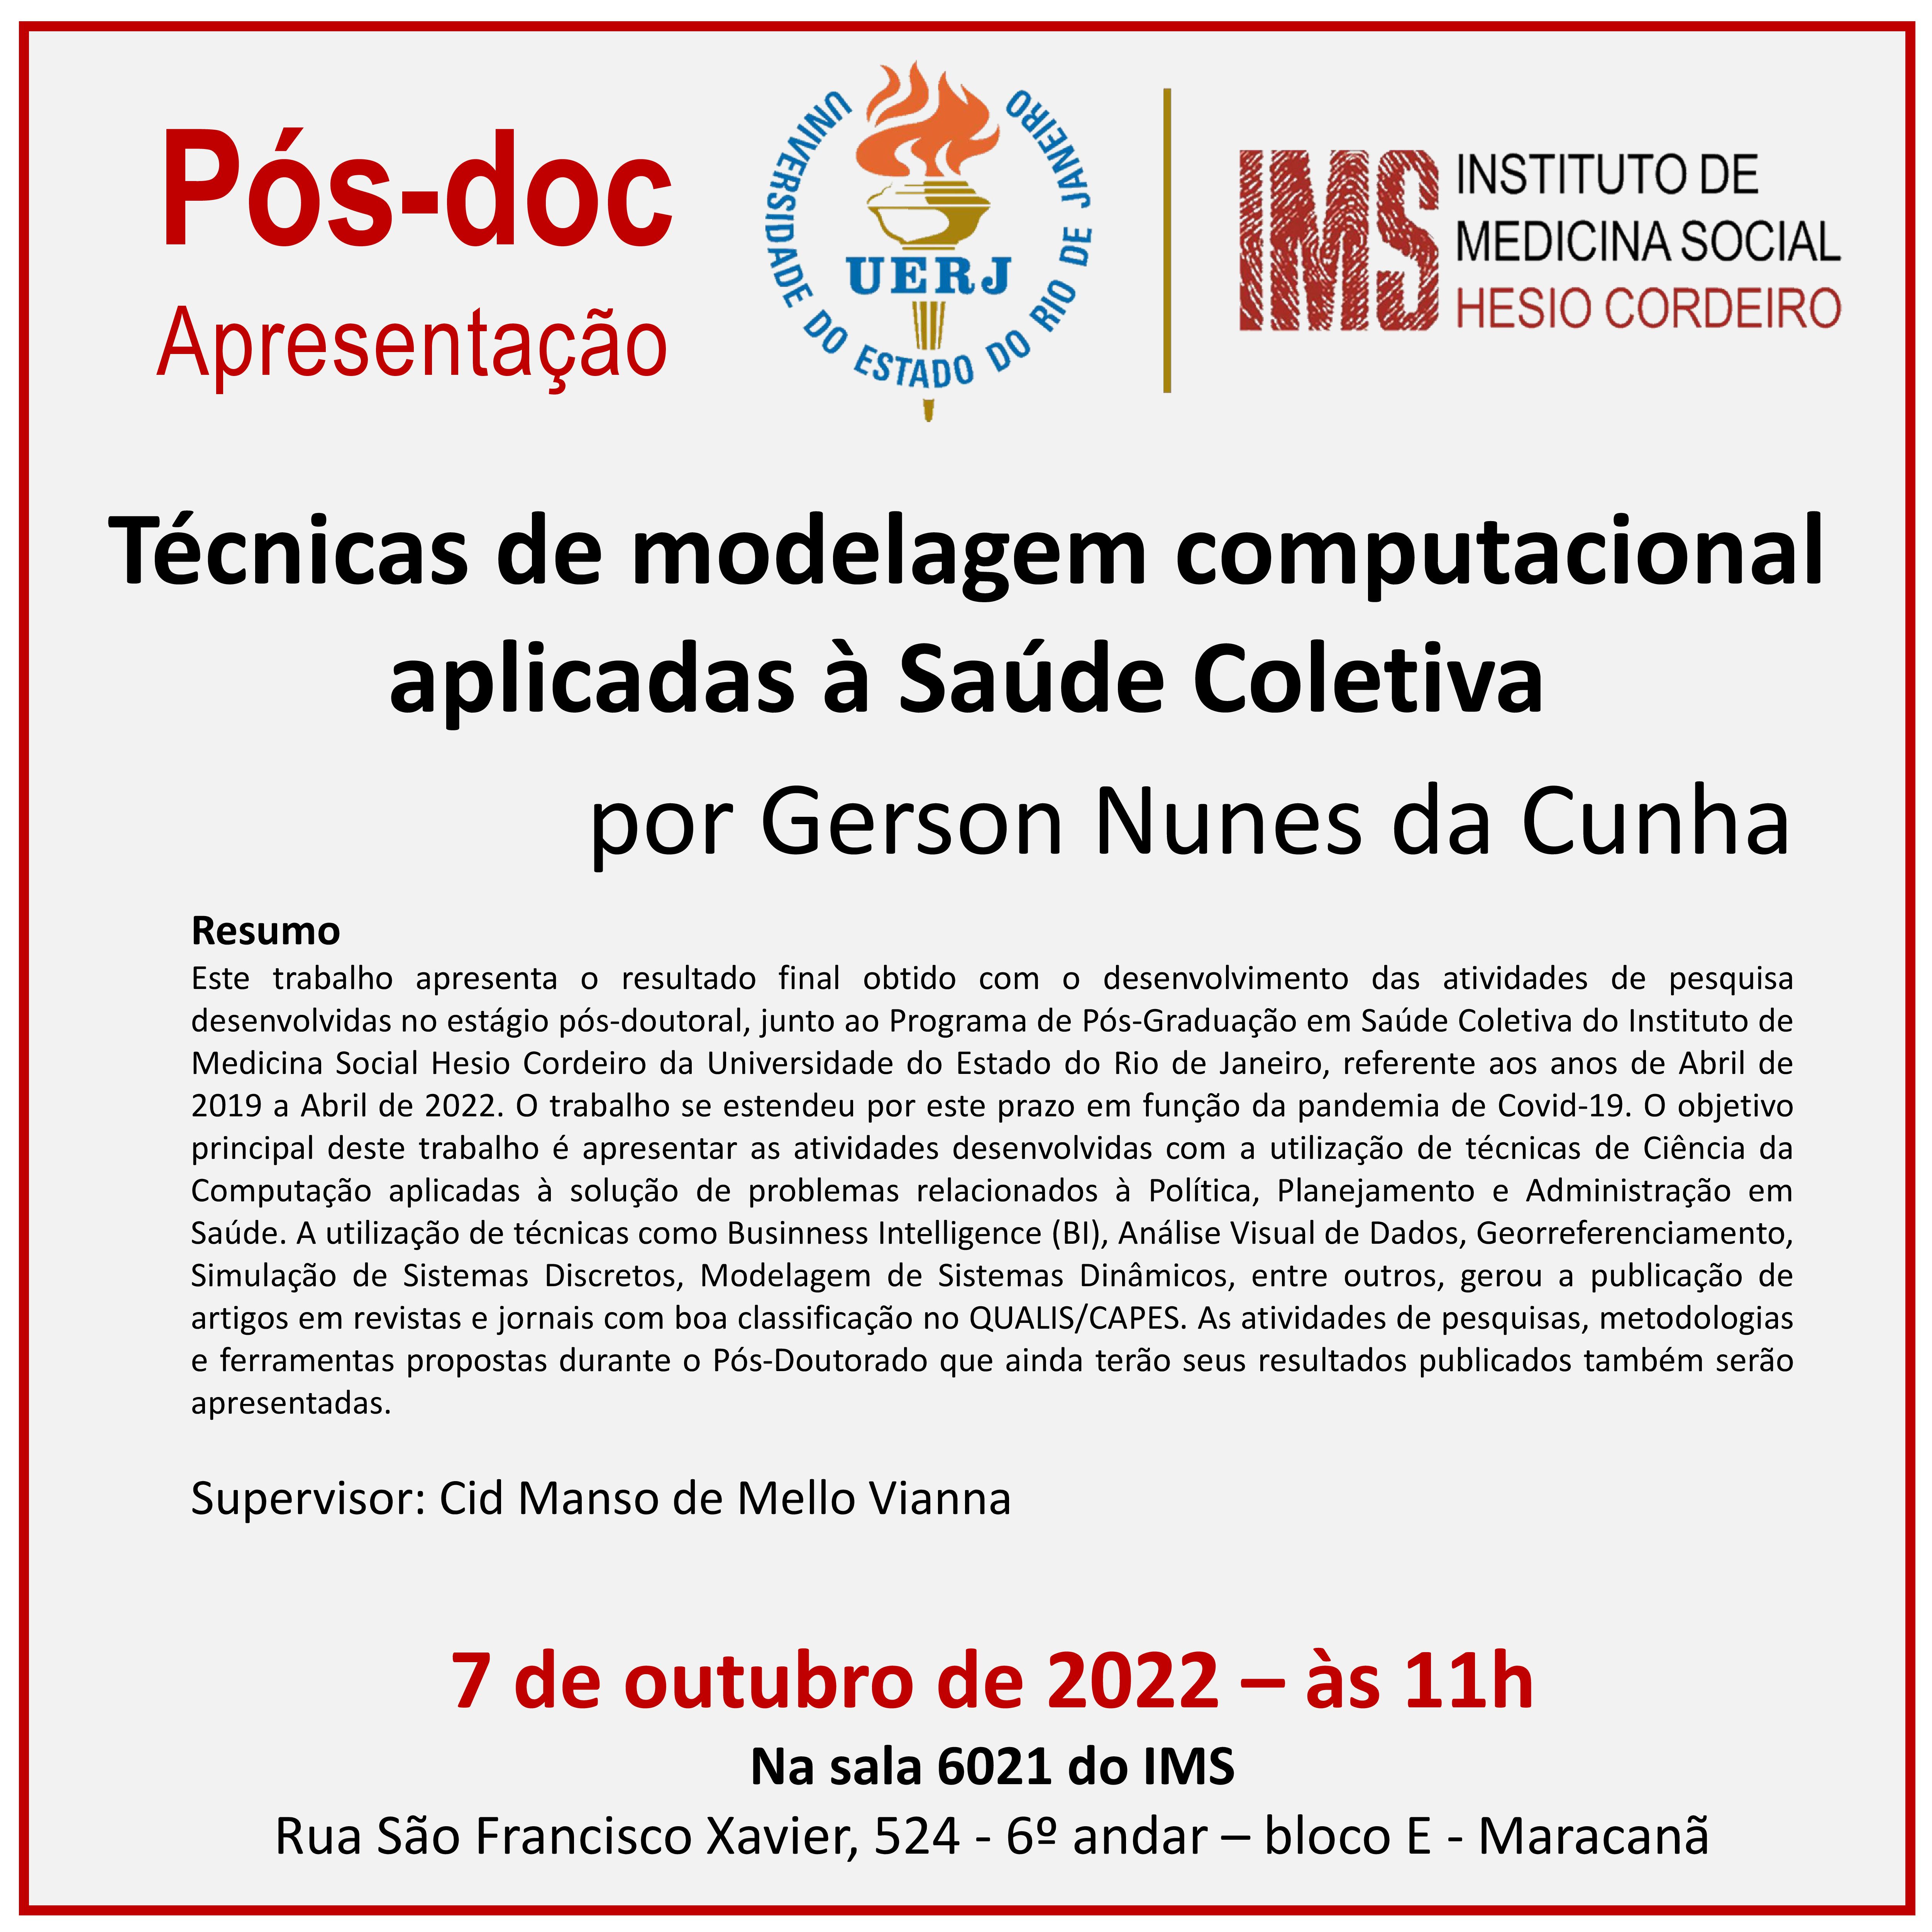 07/10 – Apresentação final de pós-doc: “Técnicas de modelagem computacional aplicadas à Saúde Coletiva”, por Gerson Nunes da Cunha